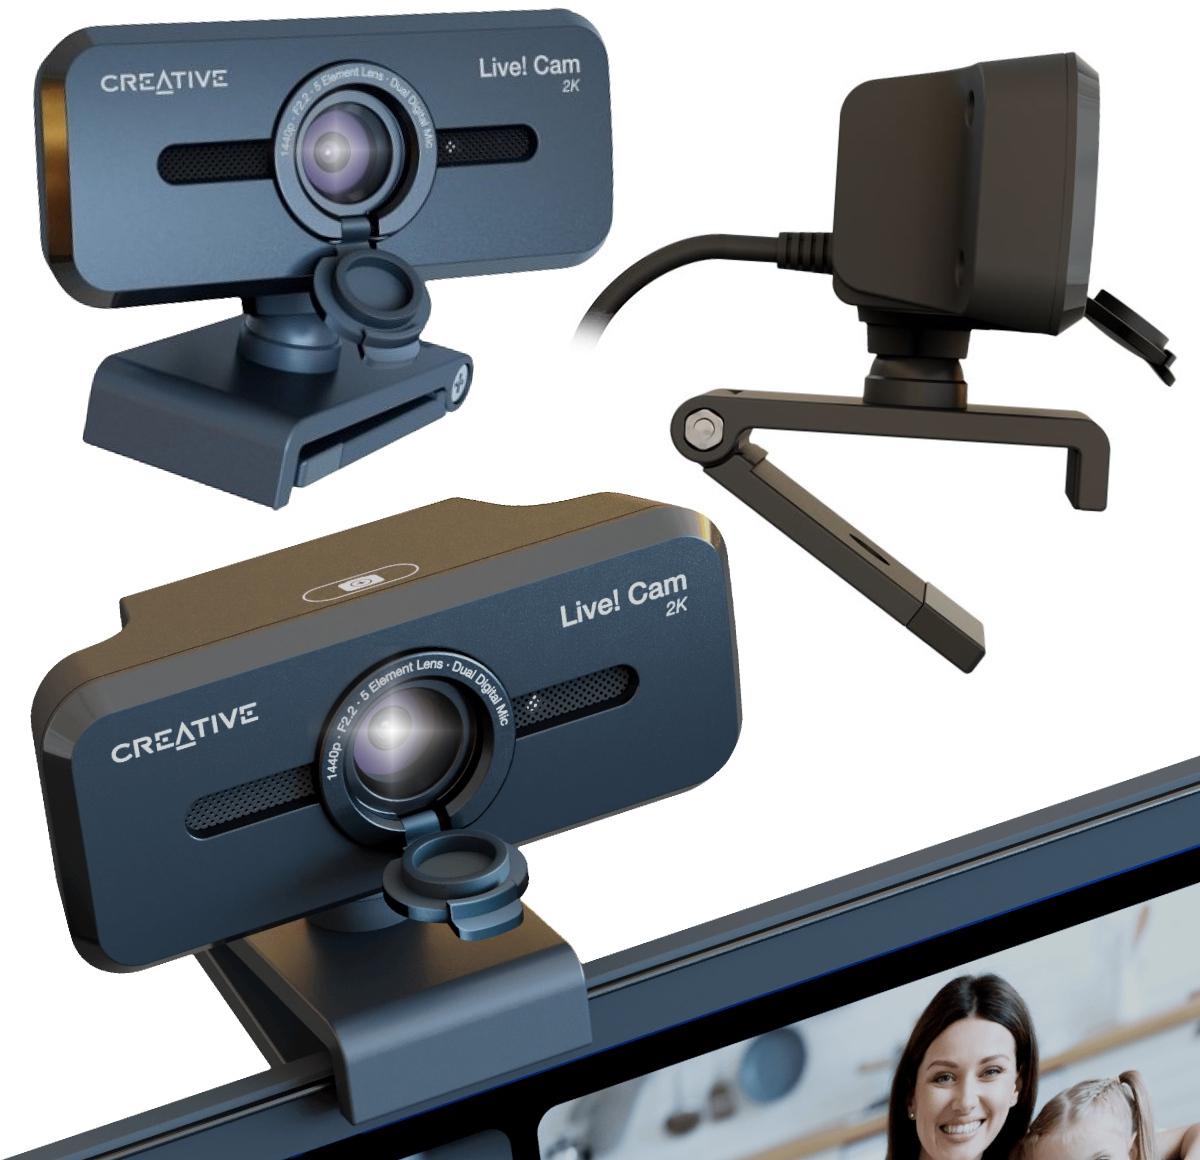 Kamera internetowa Creative Live! Cam Sync V3 - najważniejsze cechy: